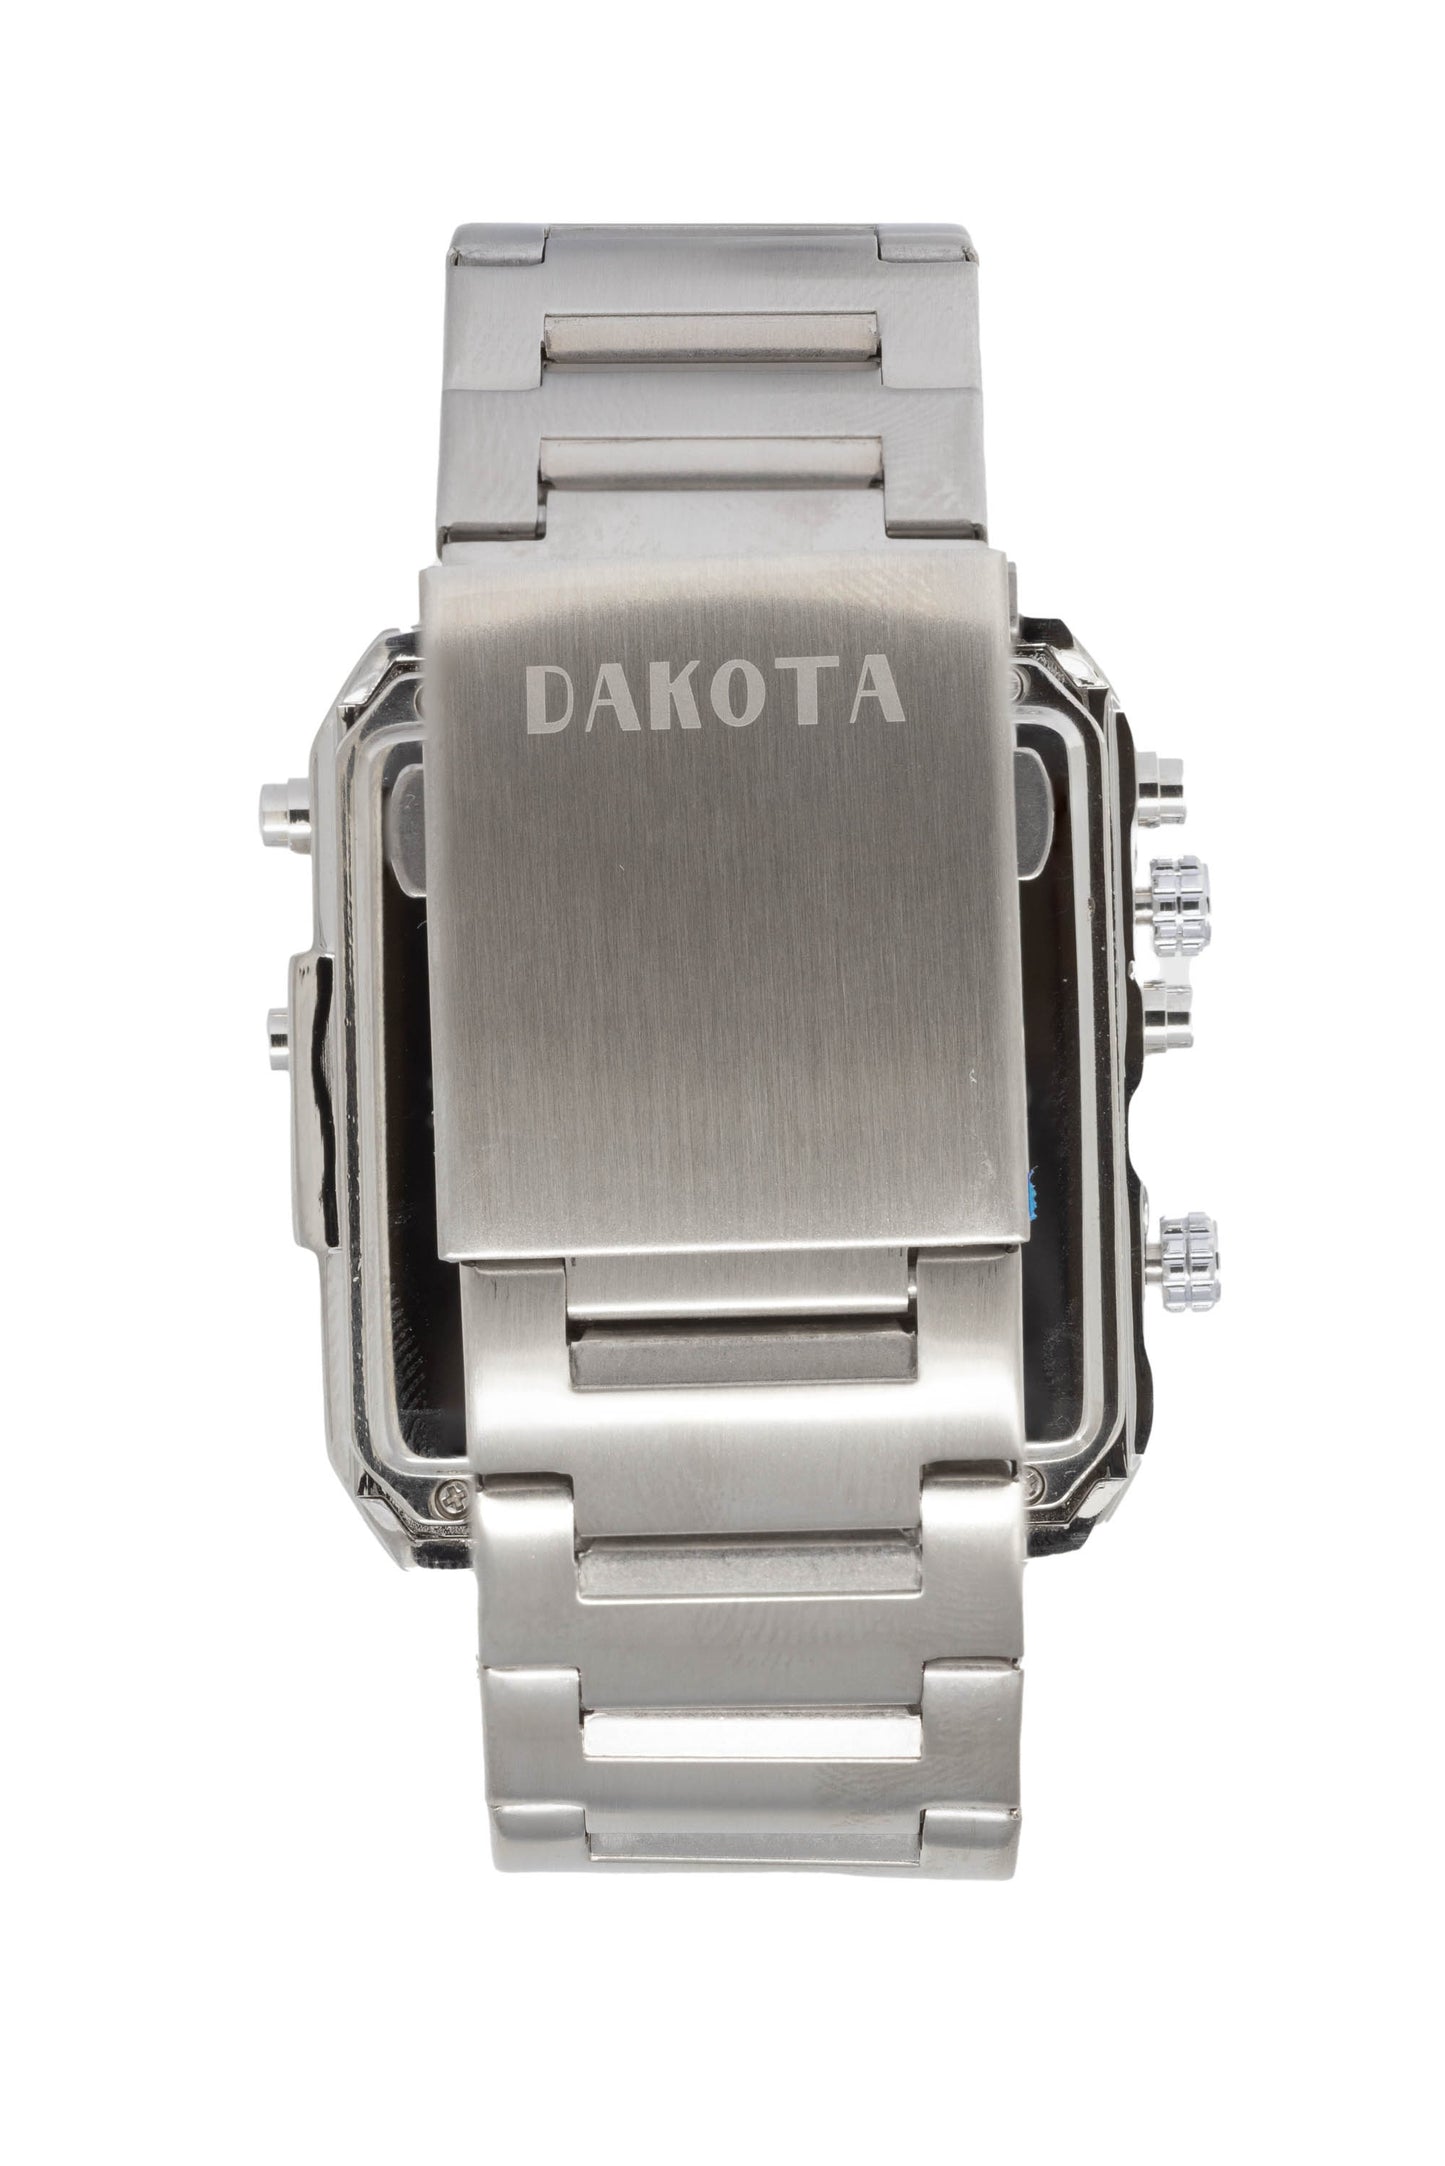 Dakota Triple Time - Silver